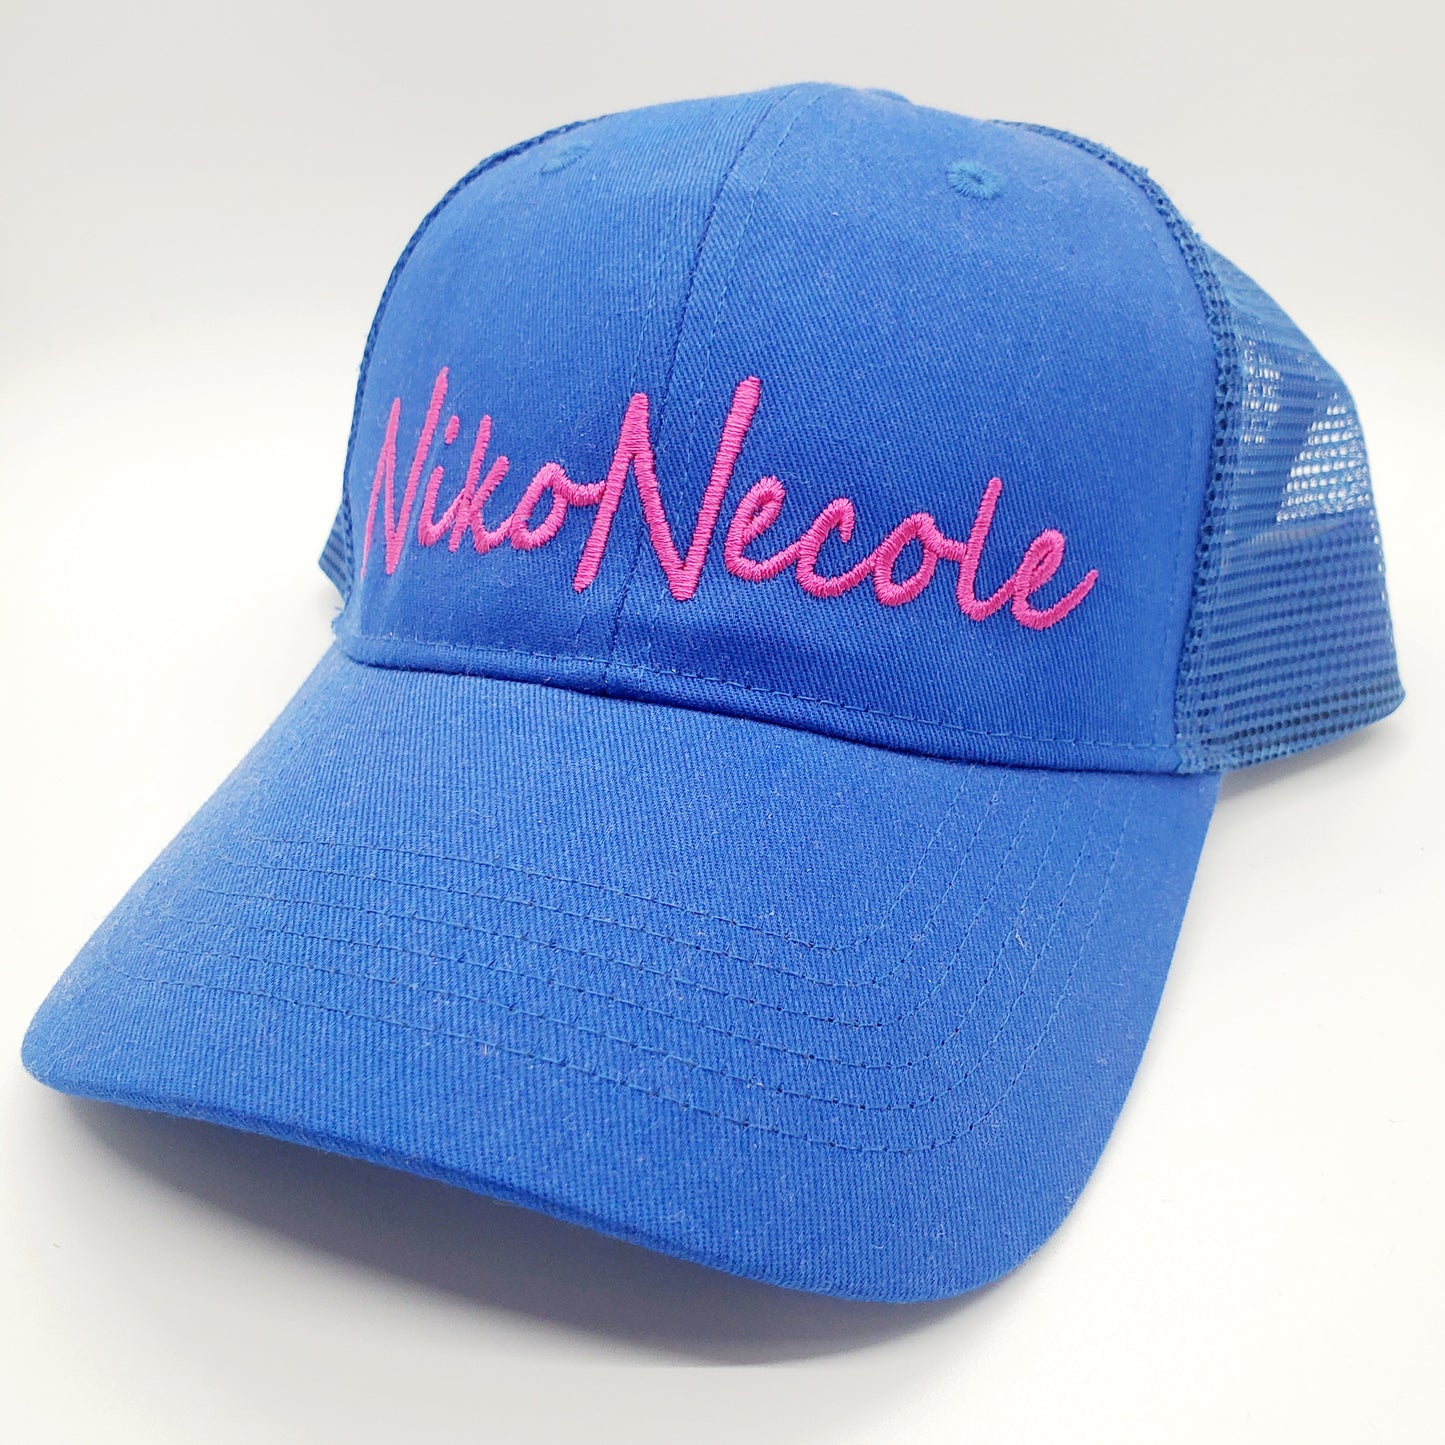 Niko Necole Snap Back Hat